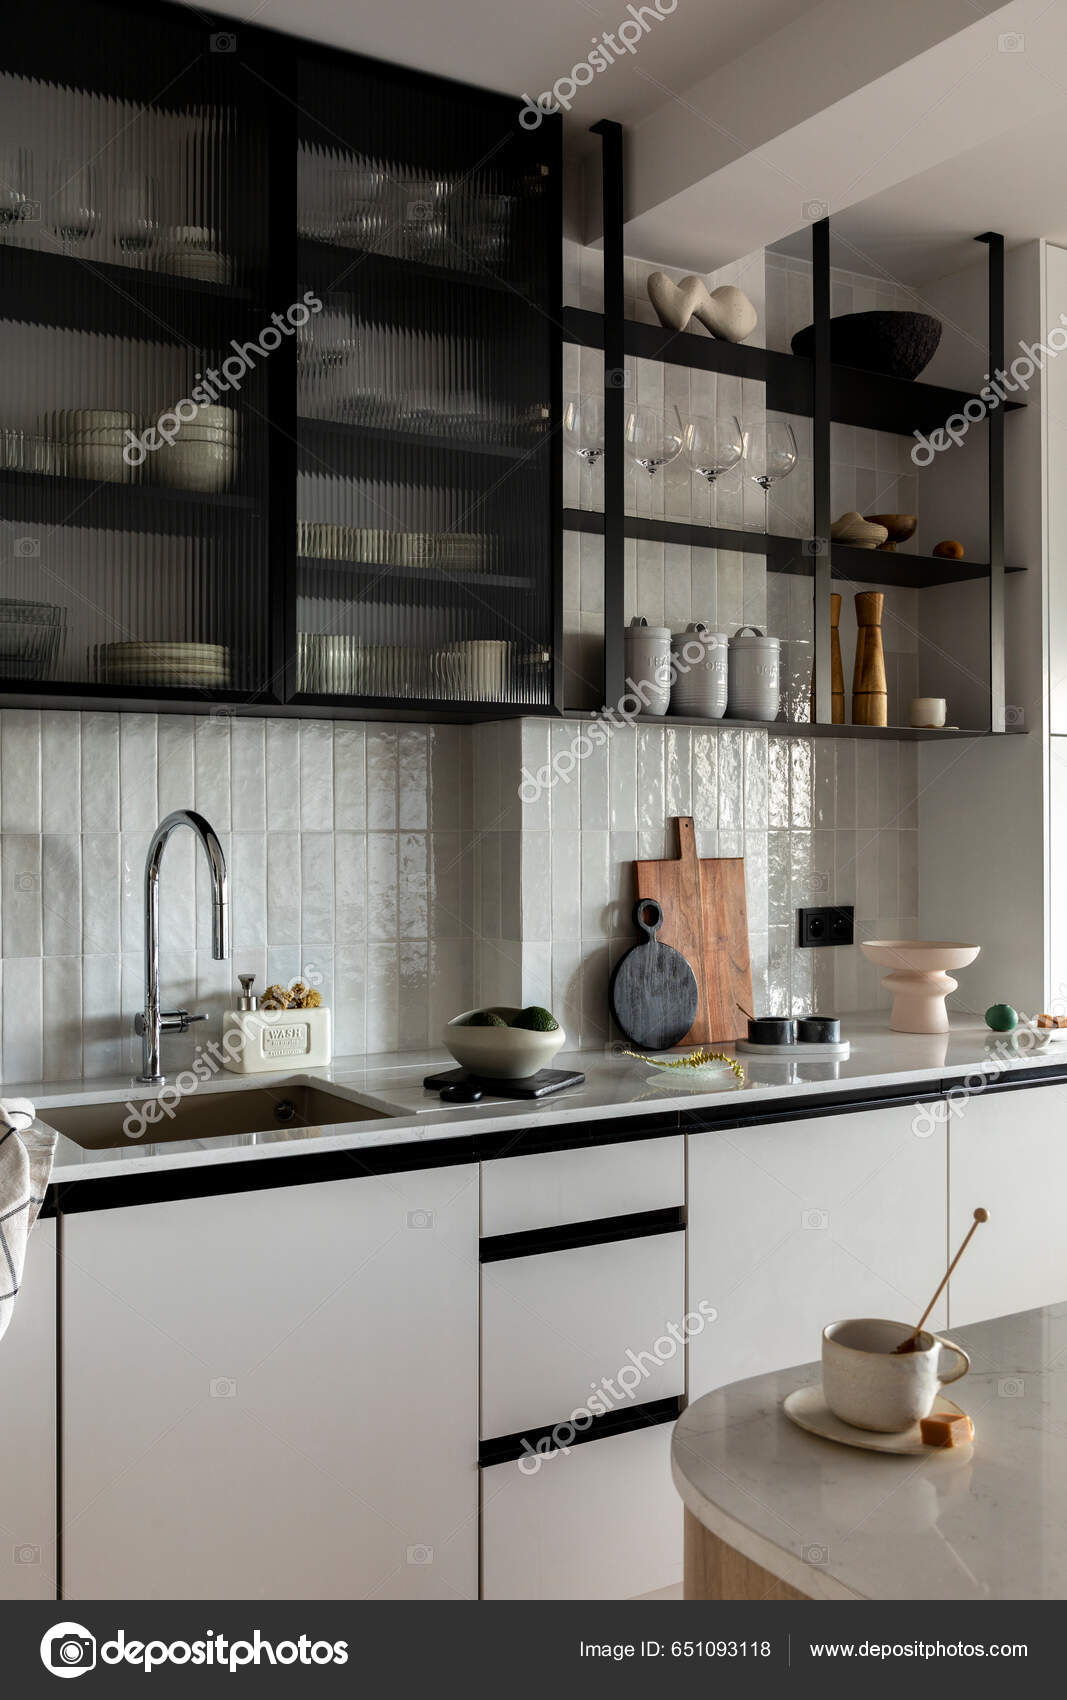 Creative Interior Design Kitchen Space Gray Cabinets Simple Silver